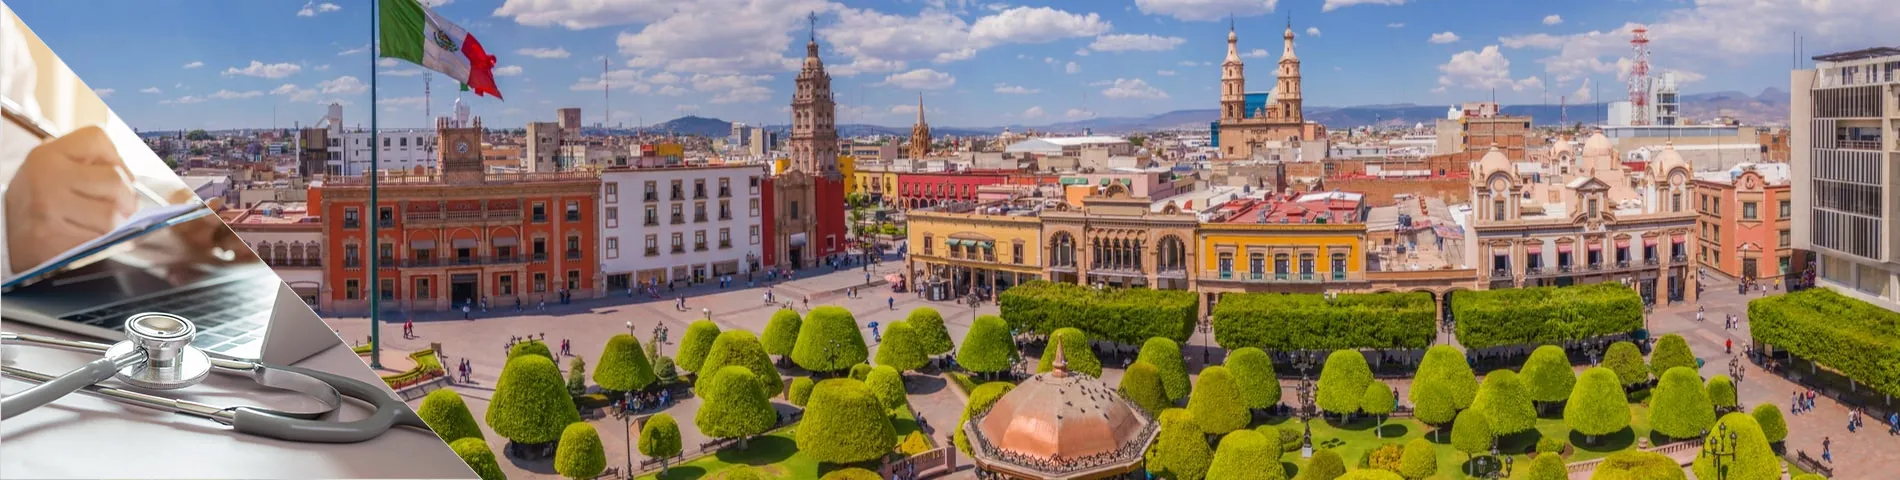 Guanajuato - Spanisch für Mediziner